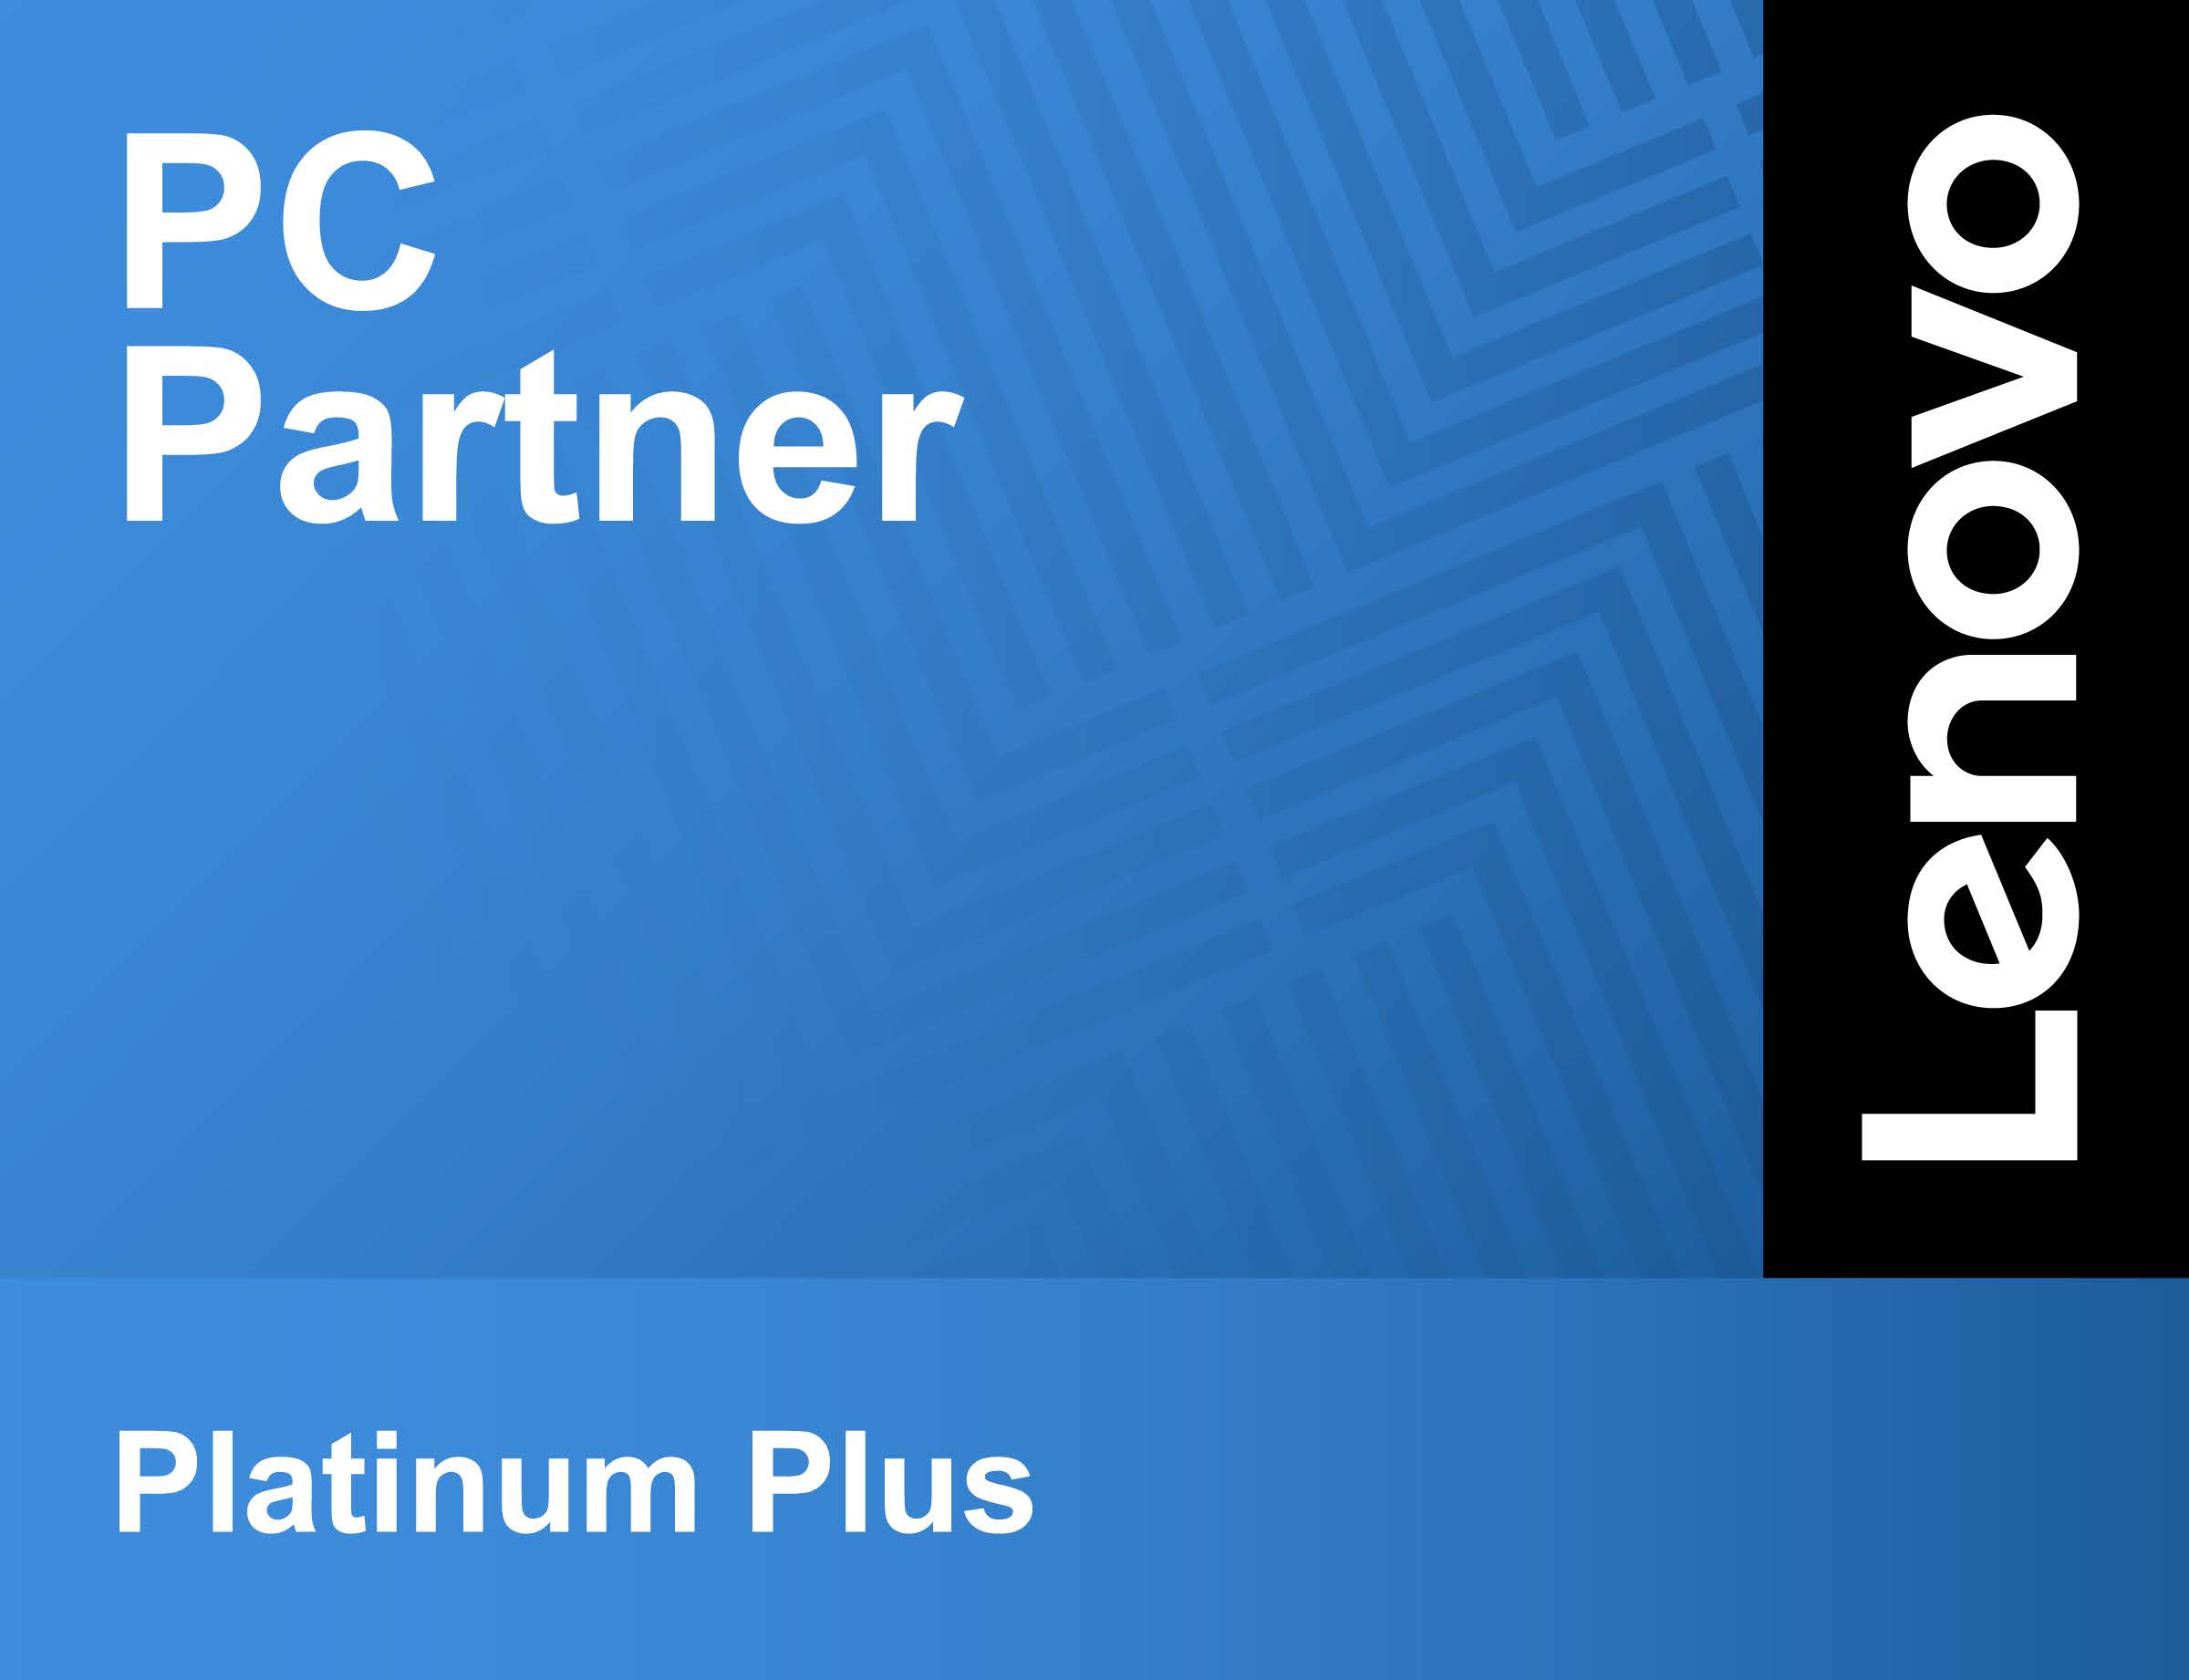 LenovoEmblem_PCPartner_PlatinumPlus